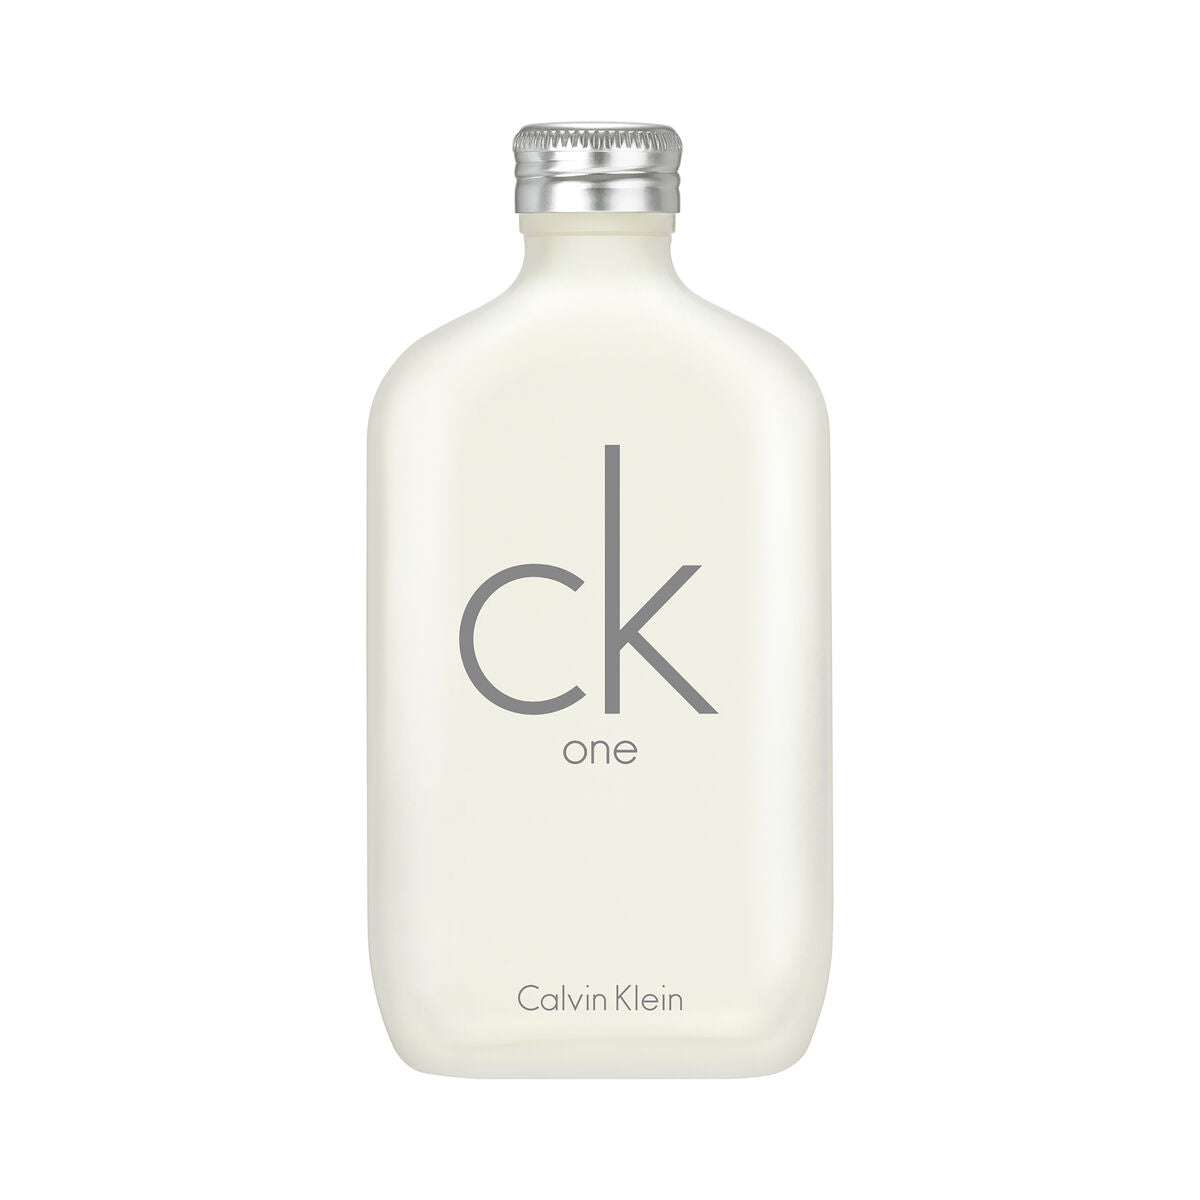 Perfume Unisex Calvin Klein EDT 200 ml ck one (Reacondicionado A)